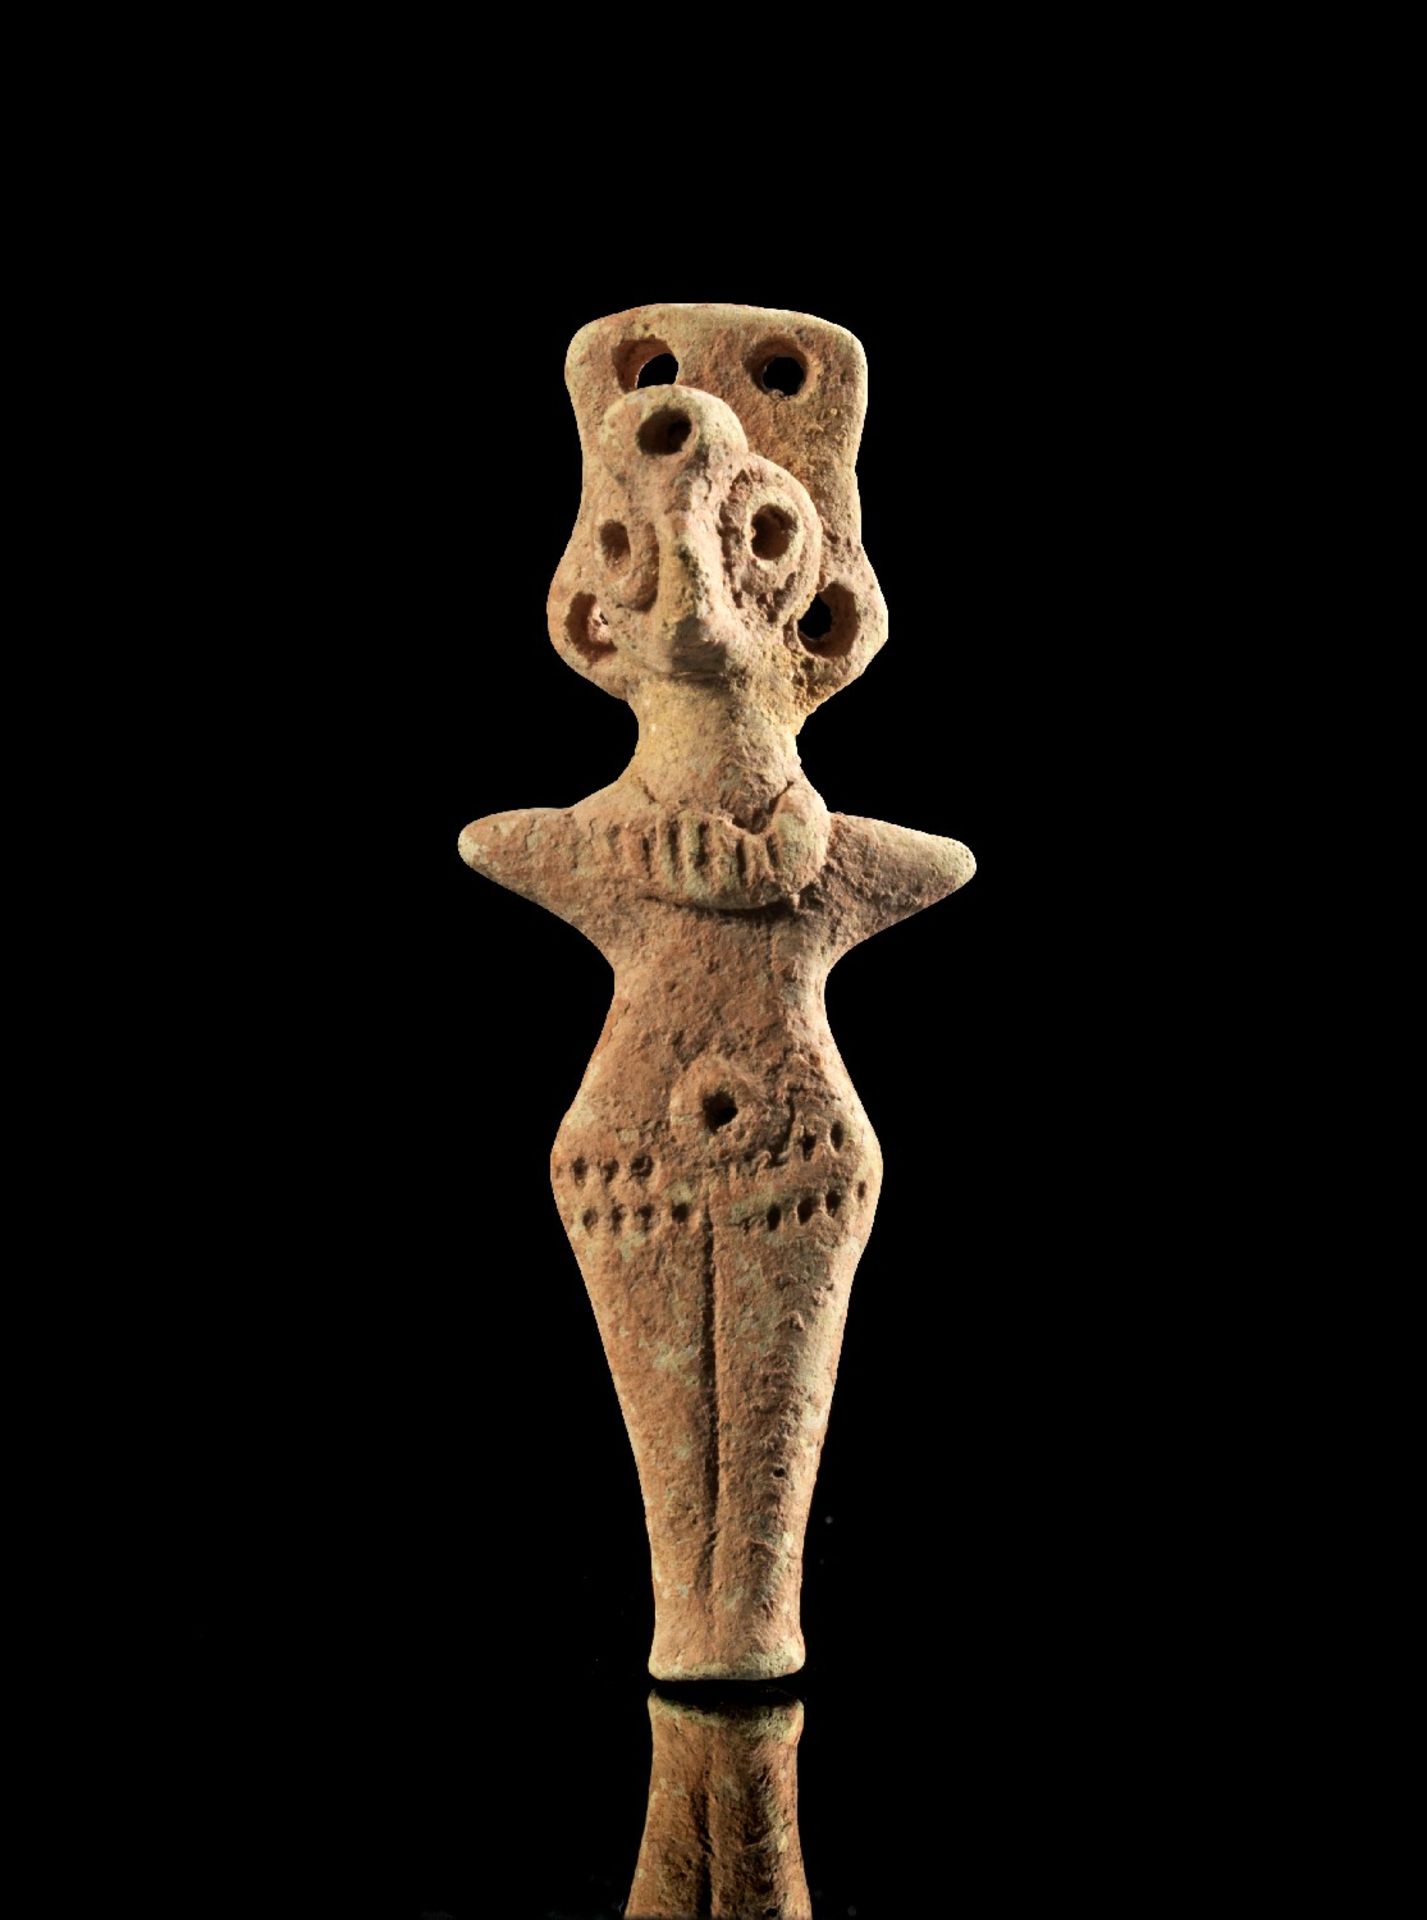 Terrakottastatuette einer weiblichen Gottheit. Syro-hethitisch, 2. Jt. v. Chr. H 8,4cm. Aus hellem